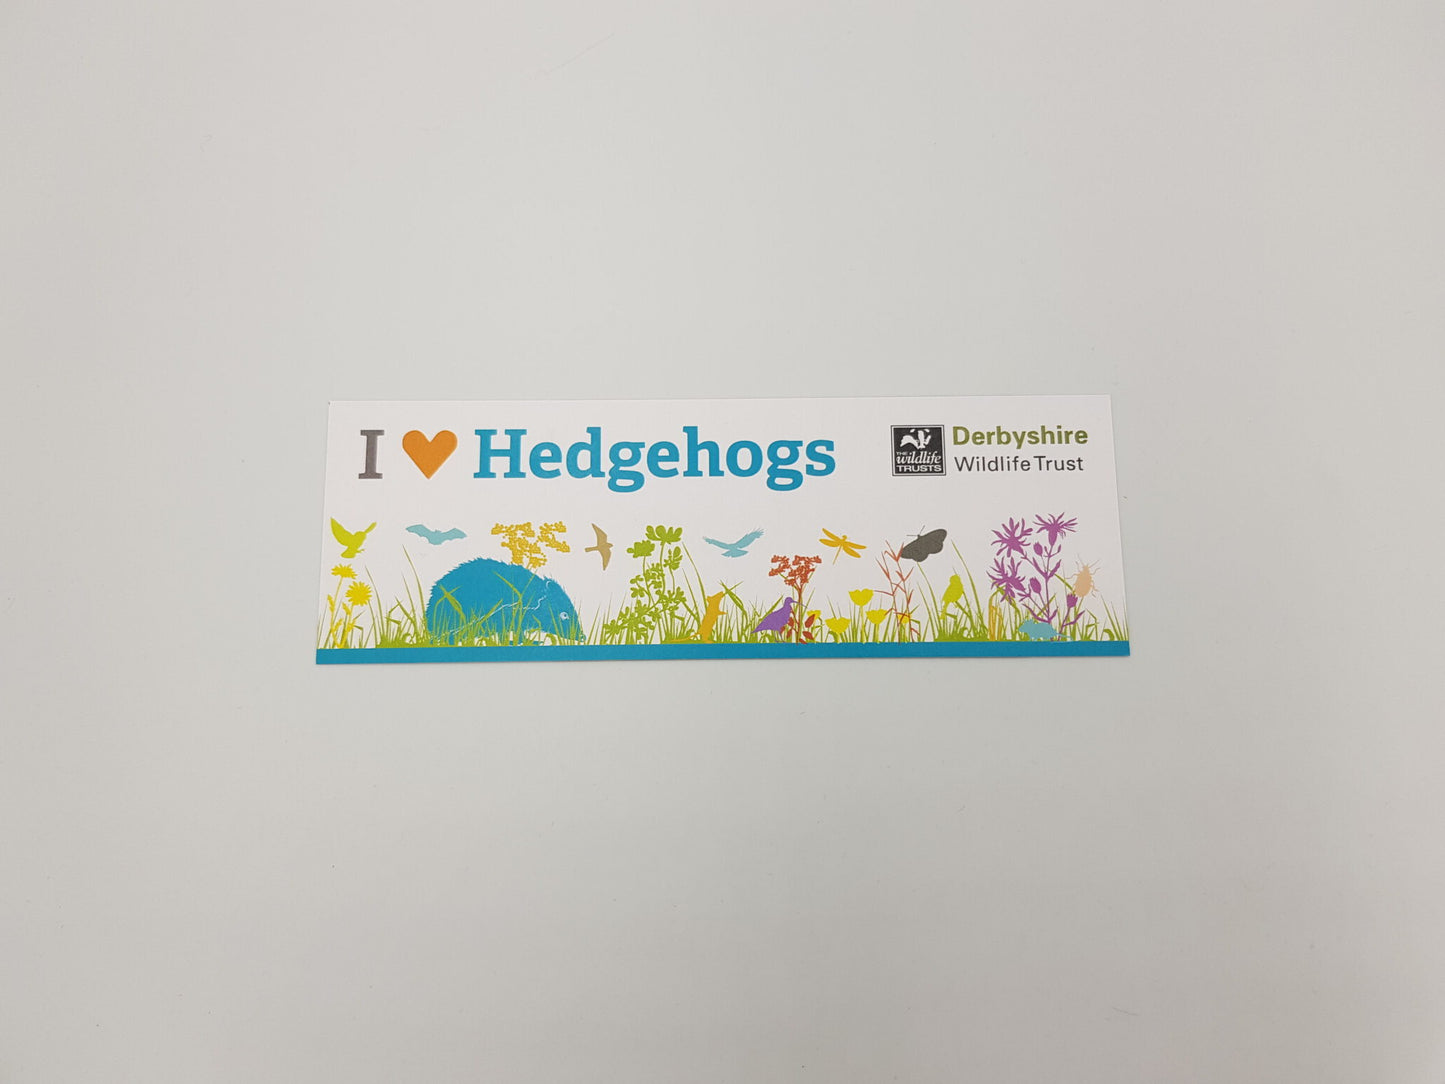 Hedgehog Adoption Pack